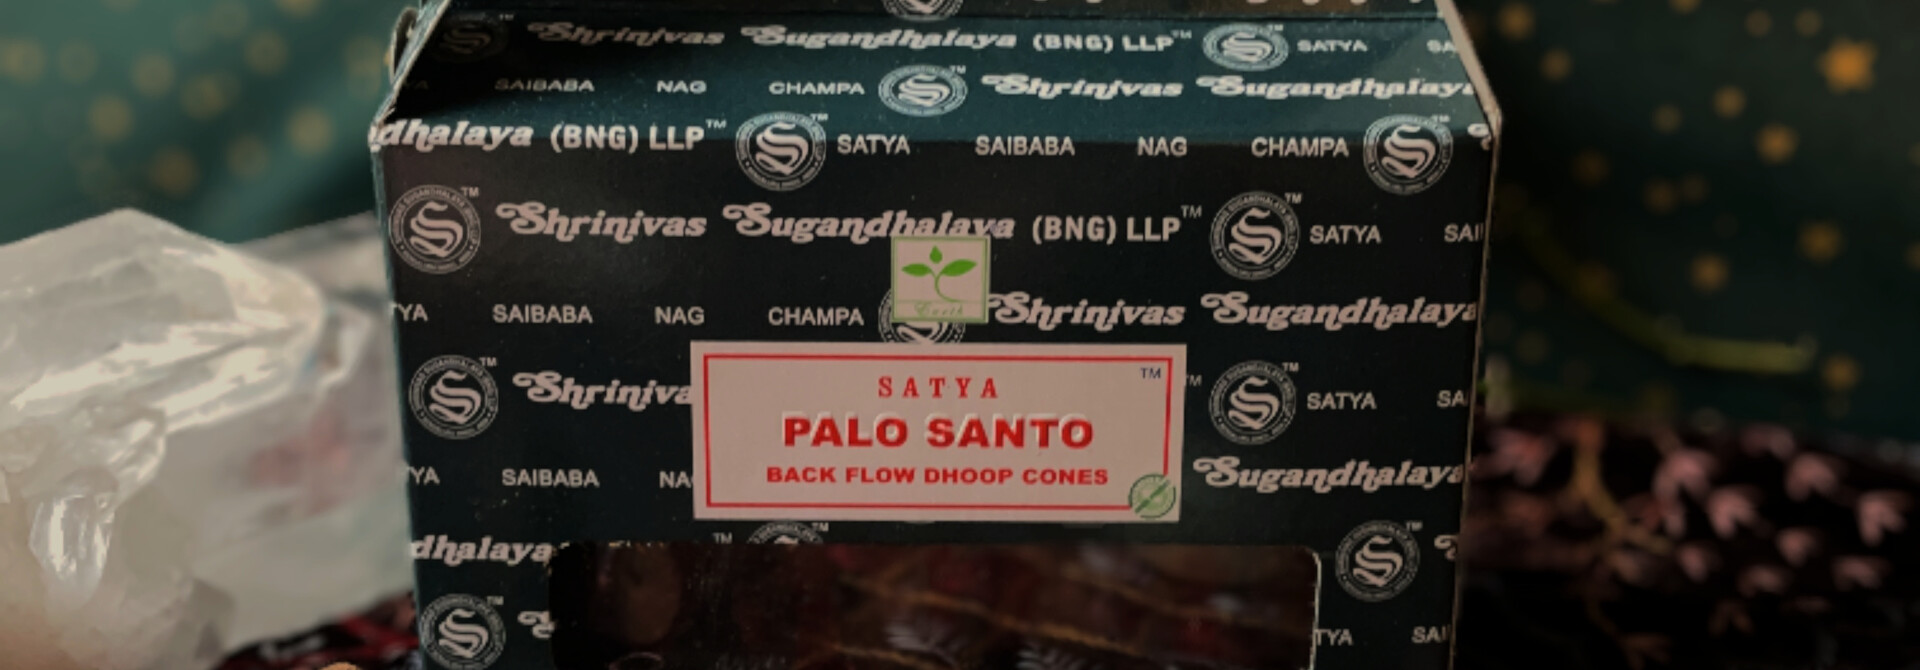 Satya Backflow Incense Cones - Palo Santo